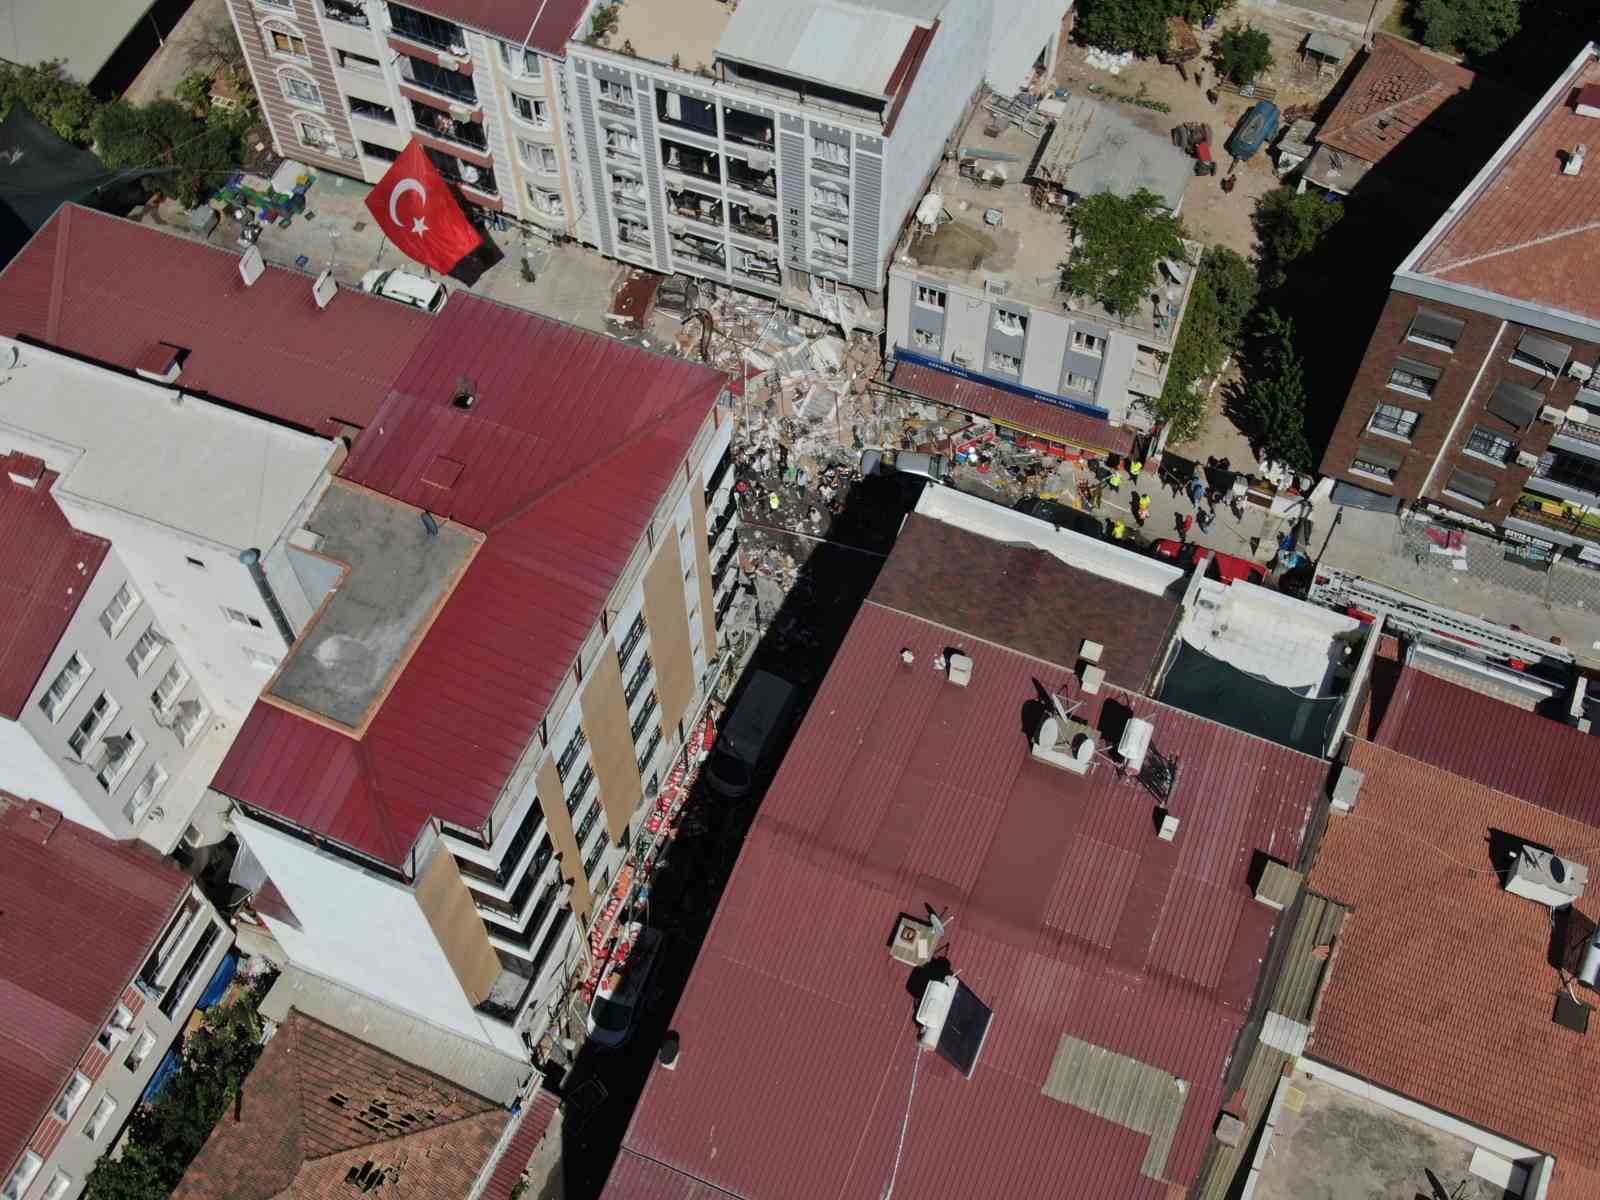 İzmir’in Torbalı ilçesi Ayrancılar Mahallesi’nde meydana gelen doğal gaz patlaması nedeniyle 4 kişinin hayatını kaybettiği, 15’in üzerinde yaralı olduğu öğrenildi. Olay yerine sevk edilen jandarma, sağlık, itfaiye ve AFAD ekiplerinin çalışmaları sürüyor.